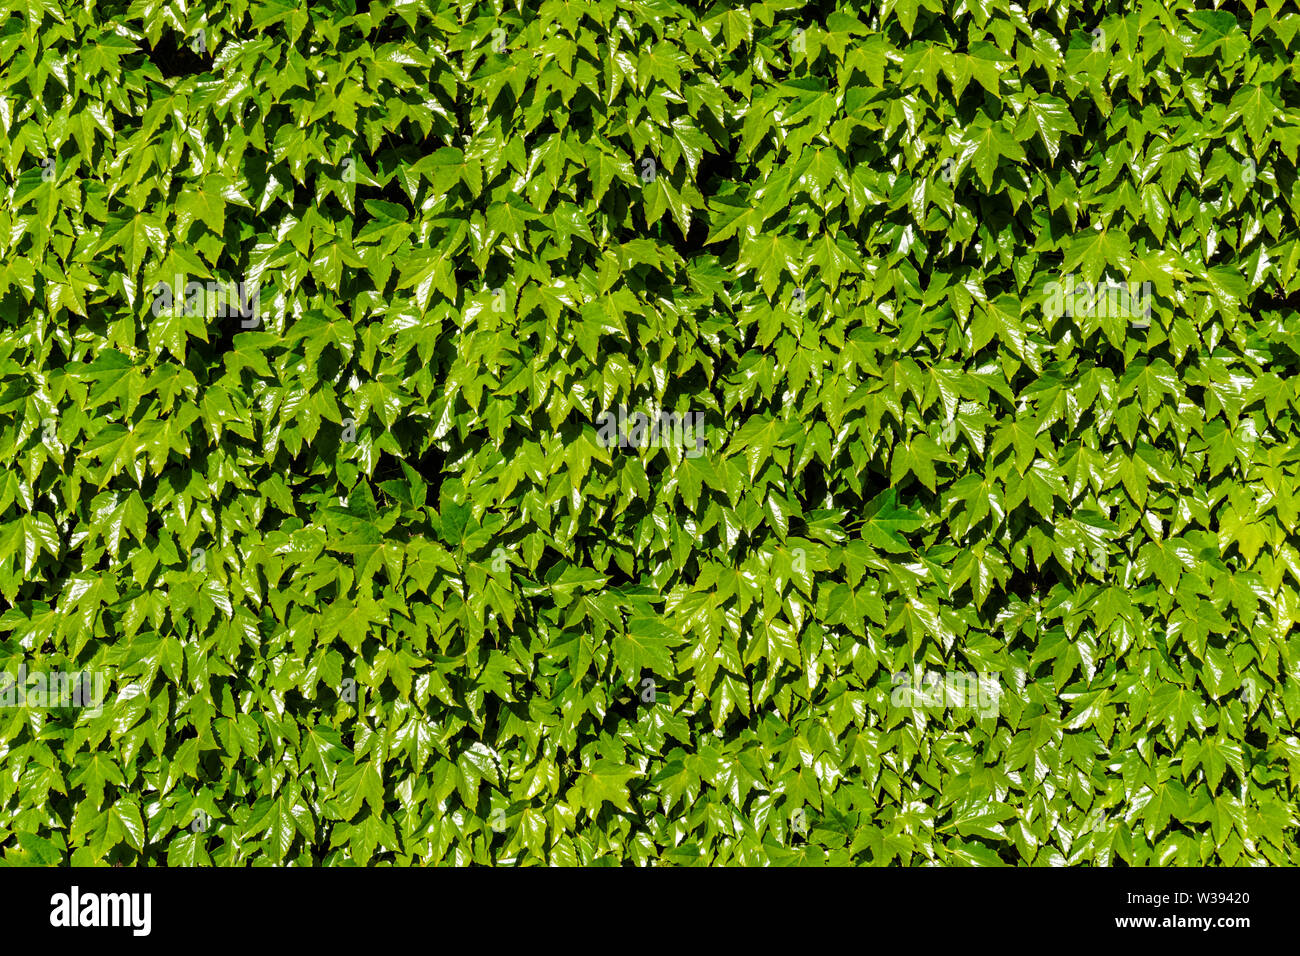 Fitto Fogliame, foglie verdi sulla parete Foto Stock